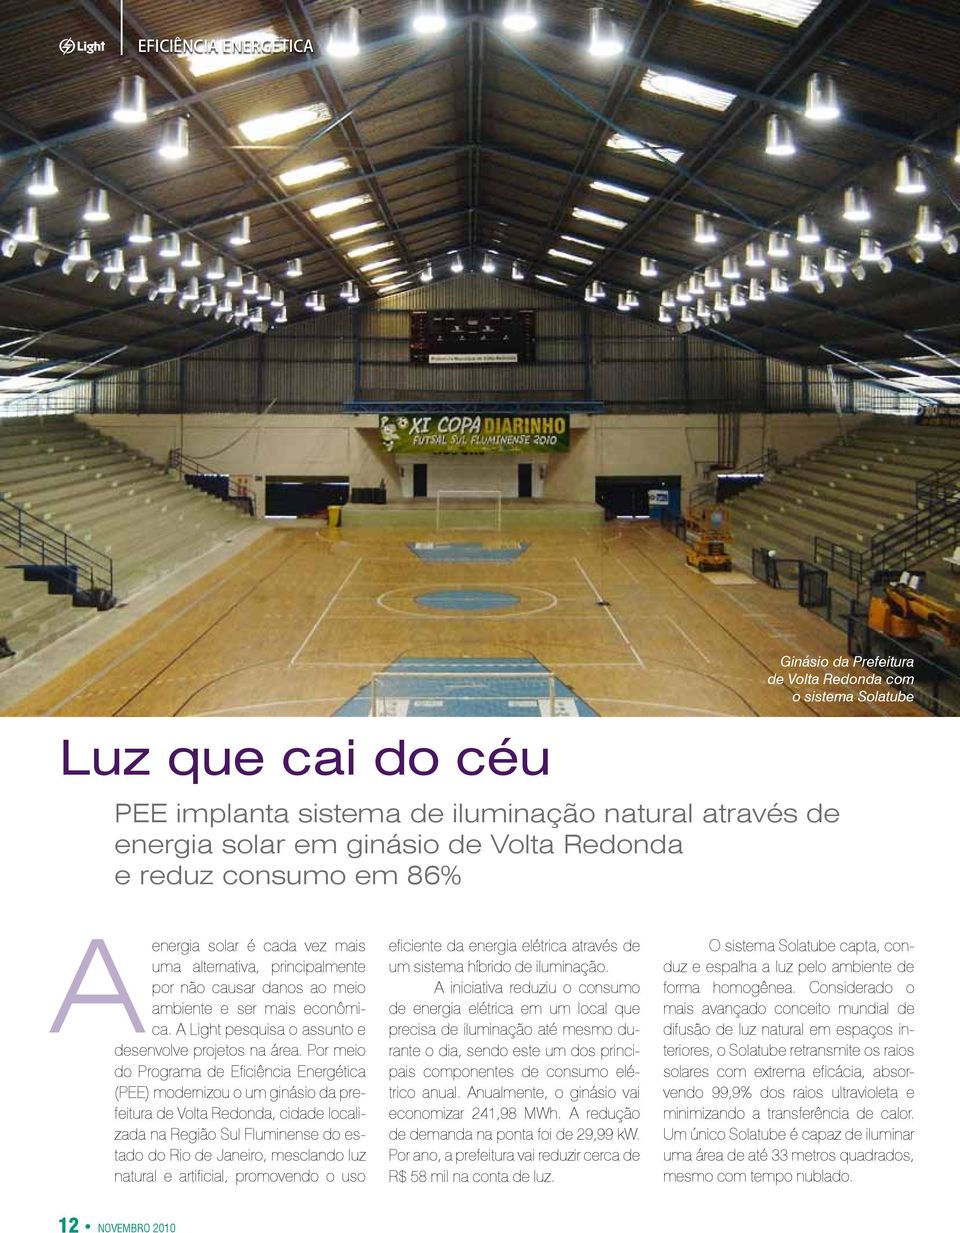 Por meio do Programa de Eficiência Energética (PEE) modernizou o um ginásio da prefeitura de Volta Redonda, cidade localizada na Região Sul Fluminense do estado do Rio de Janeiro, mesclando luz